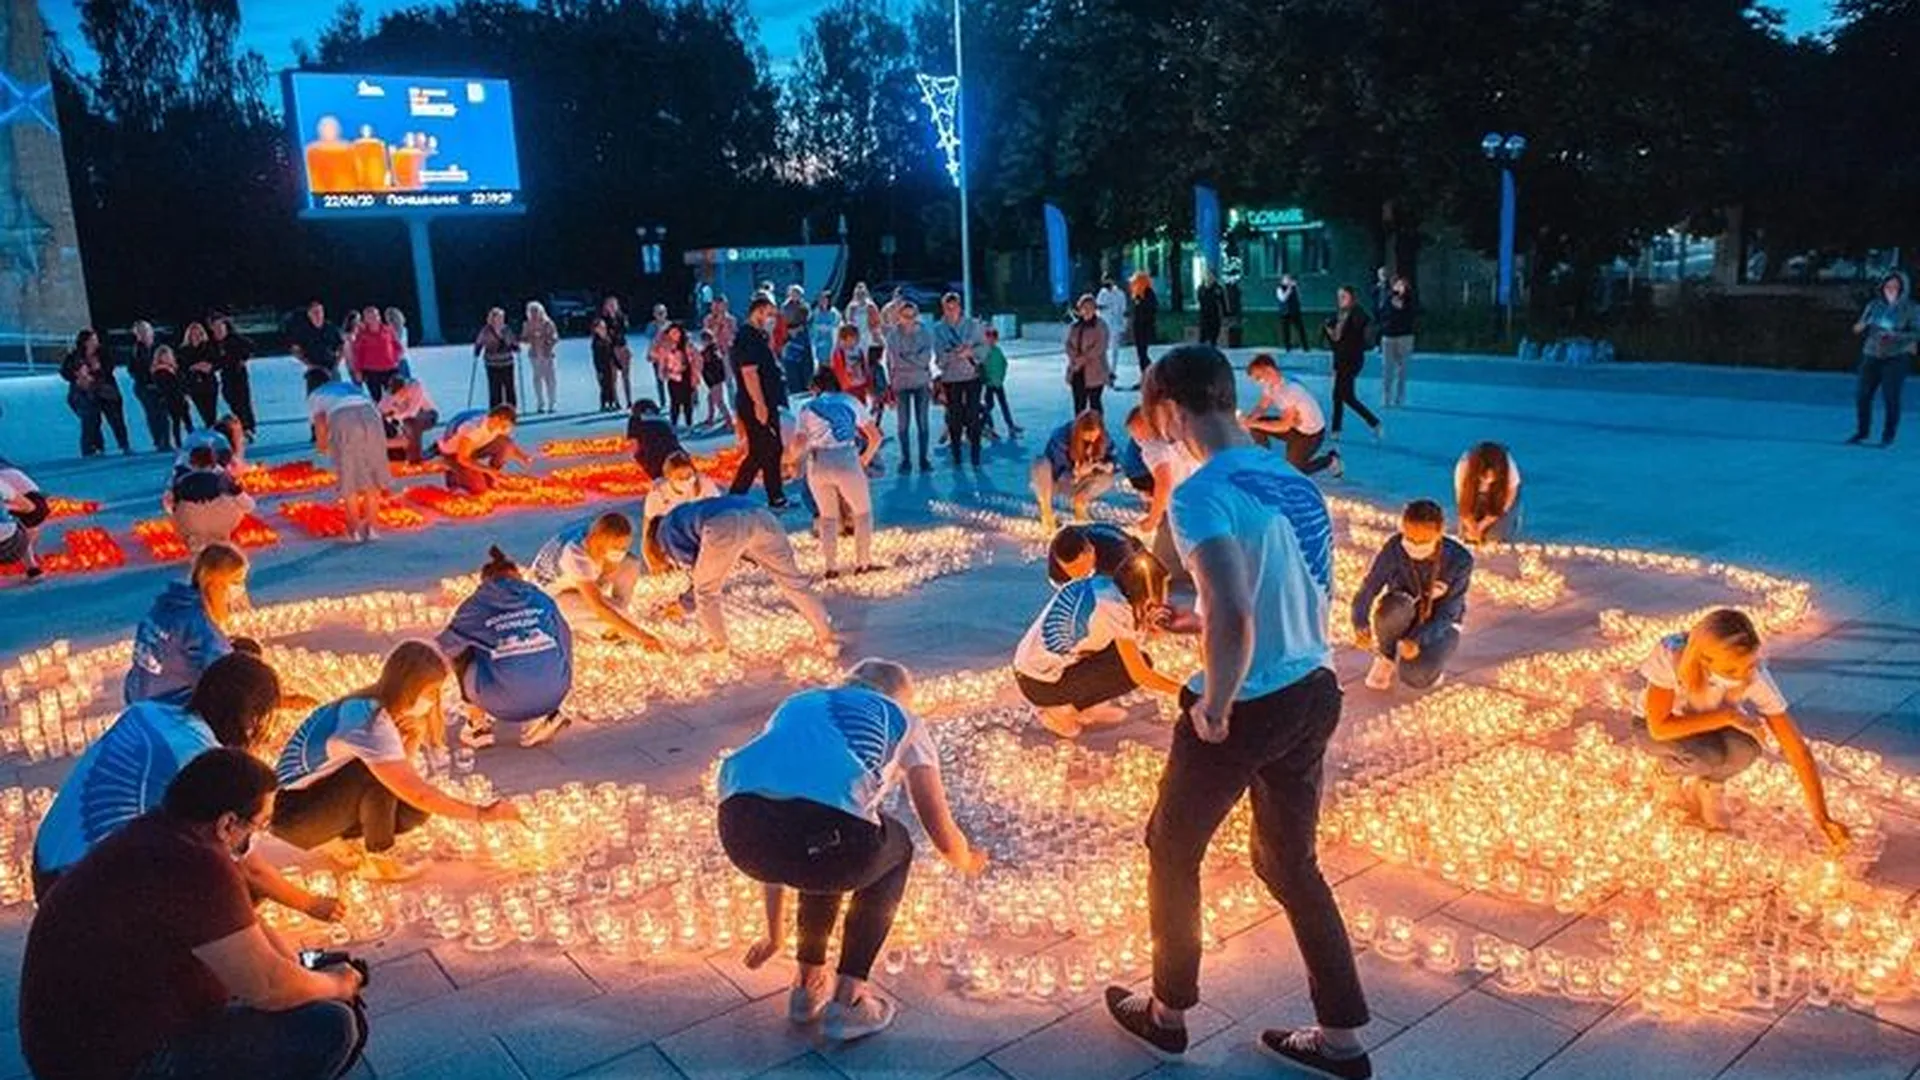 Огненное изображение воина-освободителя из 5 тысяч свечей собрали в Звездном городке 